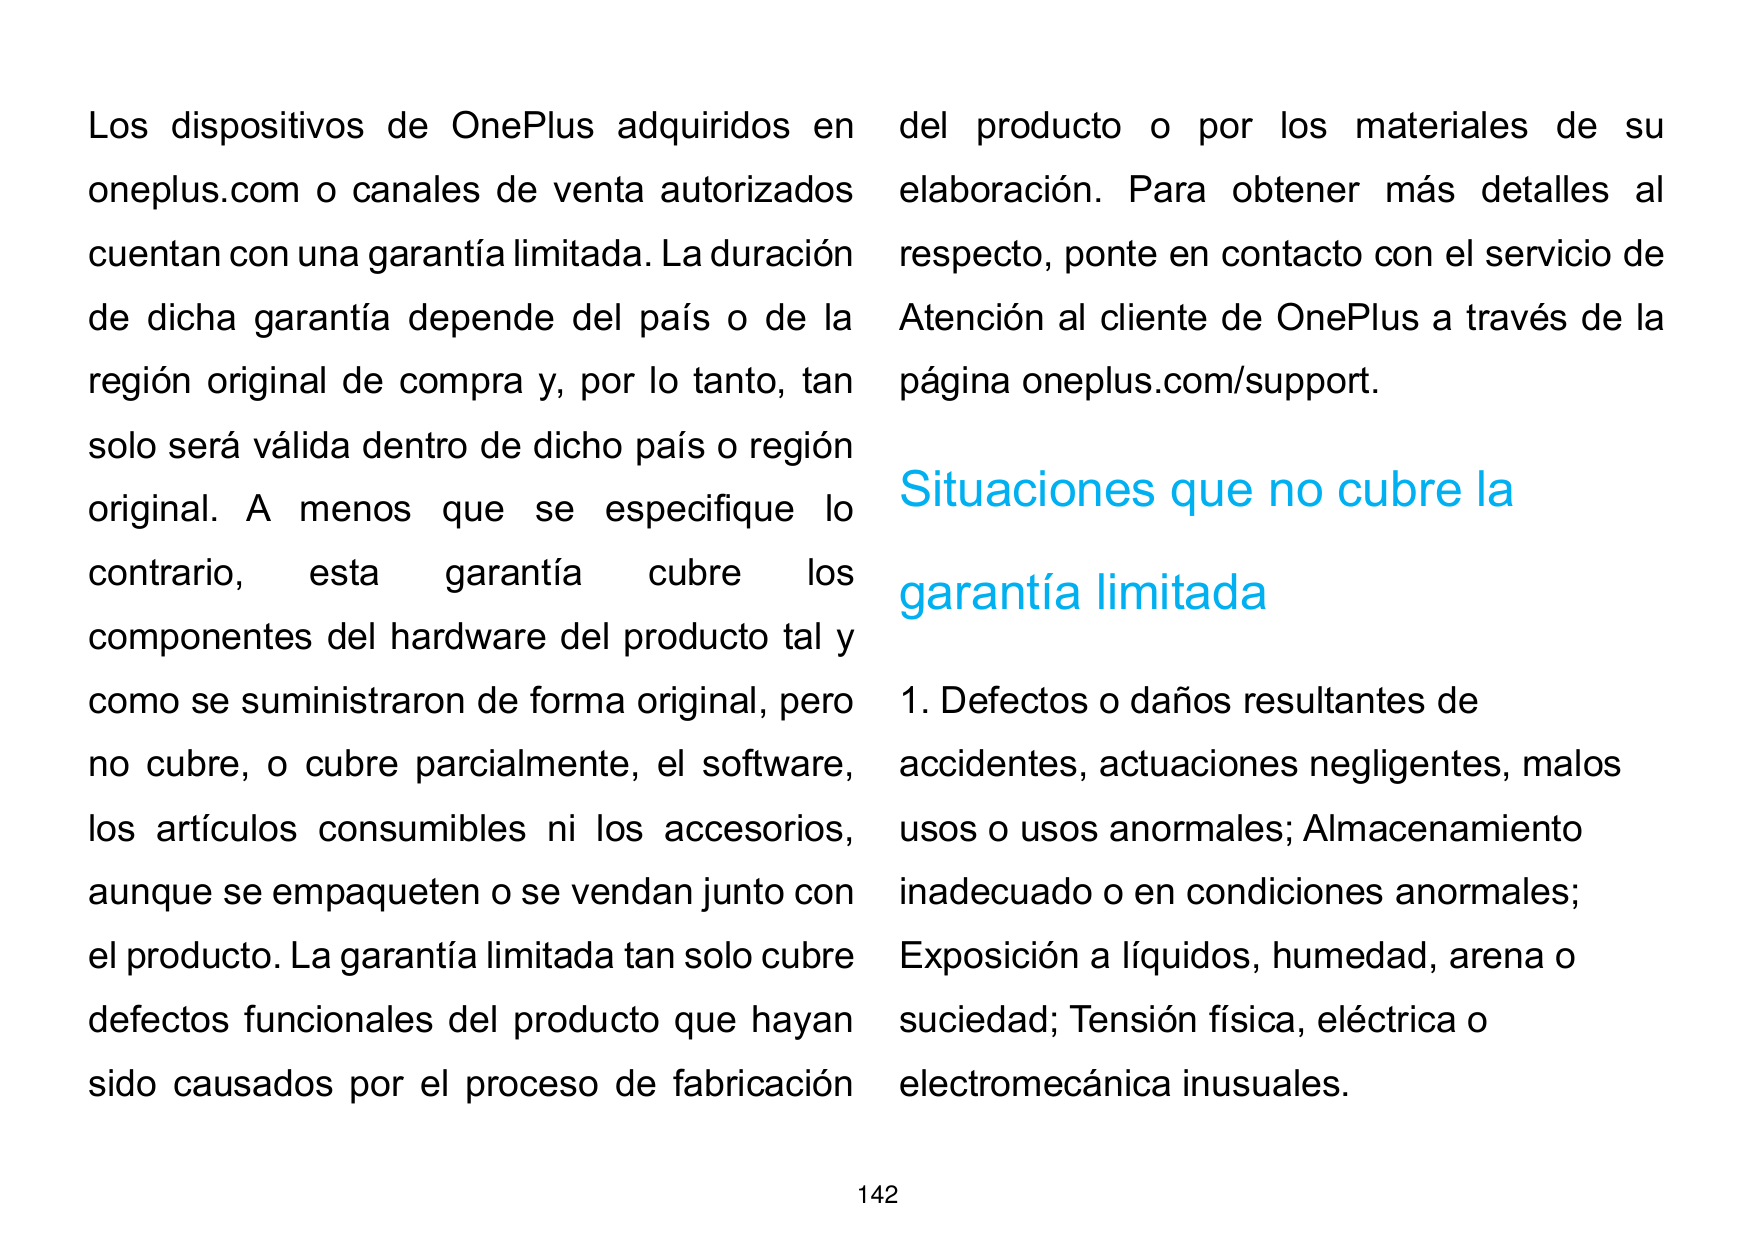 Los dispositivos de OnePlus adquiridos endel producto o por los materiales de suoneplus.com o canales de venta autorizadoselabor